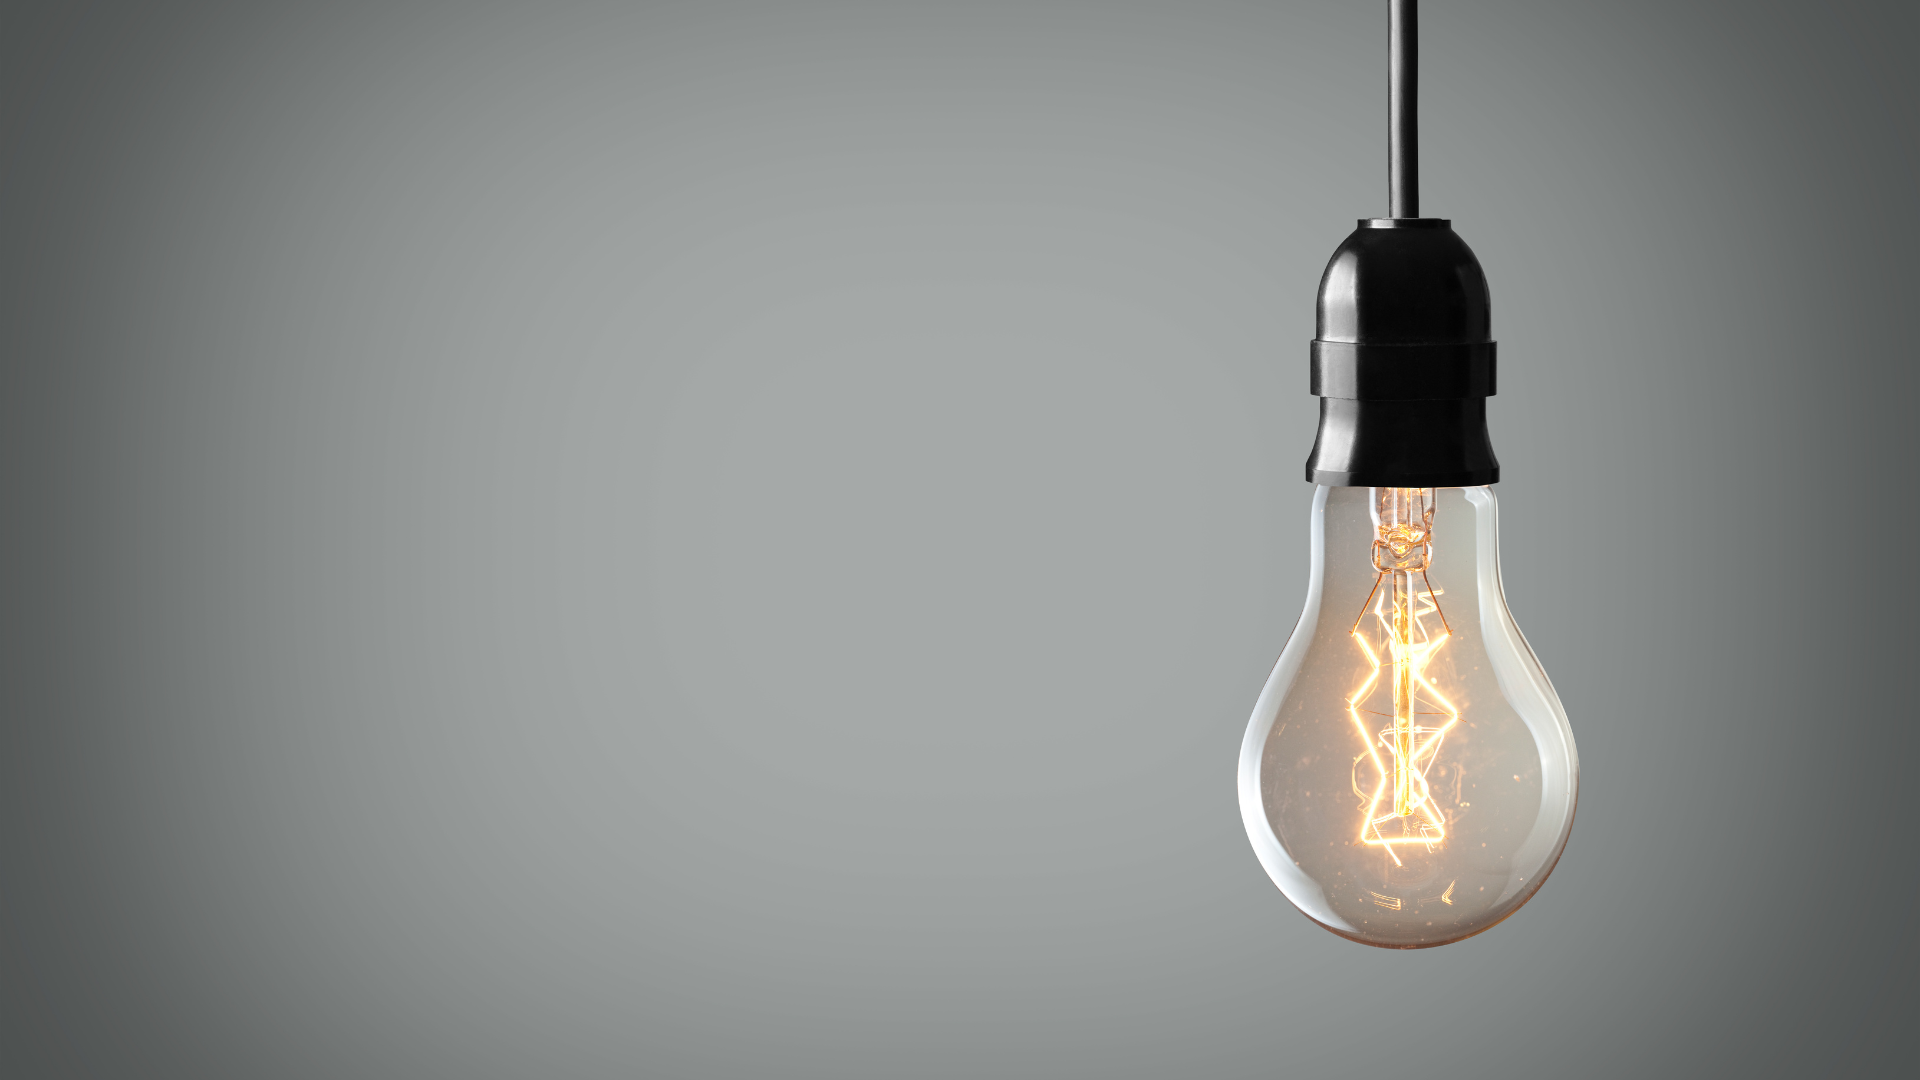 Glühbirne mit leuchtendem Filament hängt vor einem grauen Hintergrund, Symbol für Ideenfindung und Inspiration, im Zusammenhang mit 'Nebenberufliche Tätigkeit: ein Leitfaden'